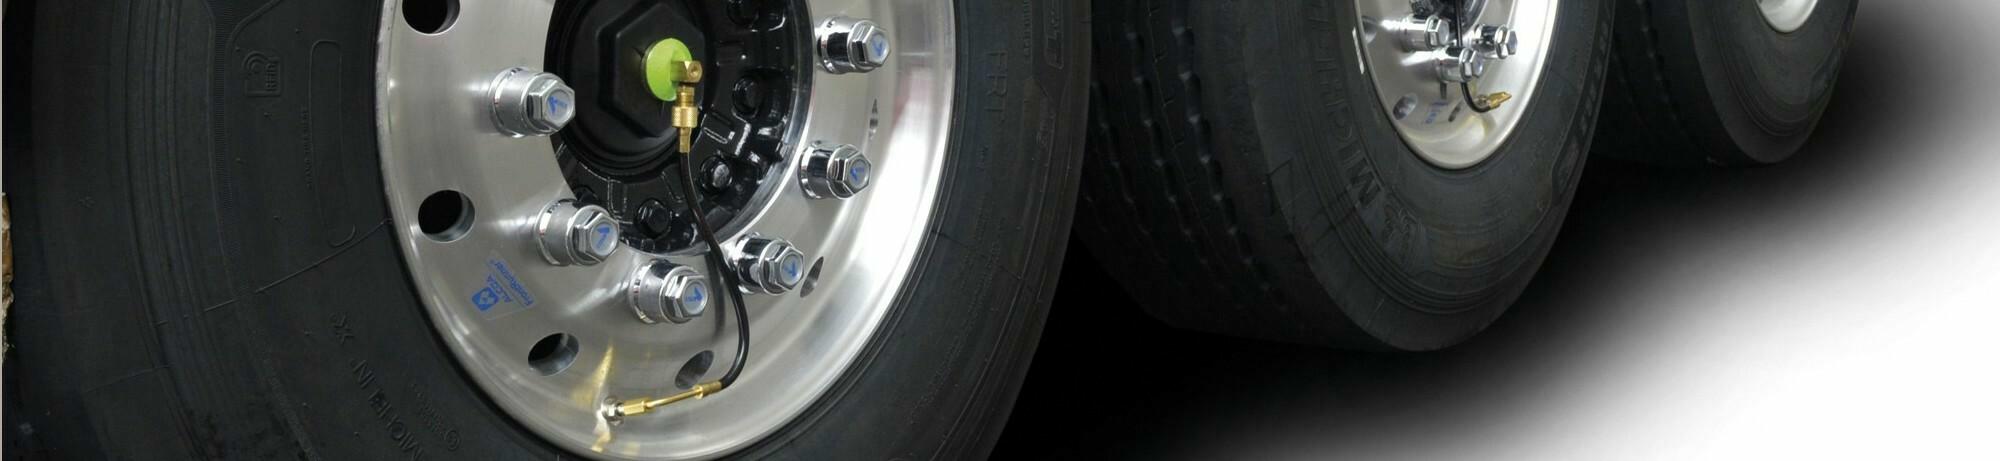 TIPS&TRICKS - Contrôle automatique de la pression des pneus